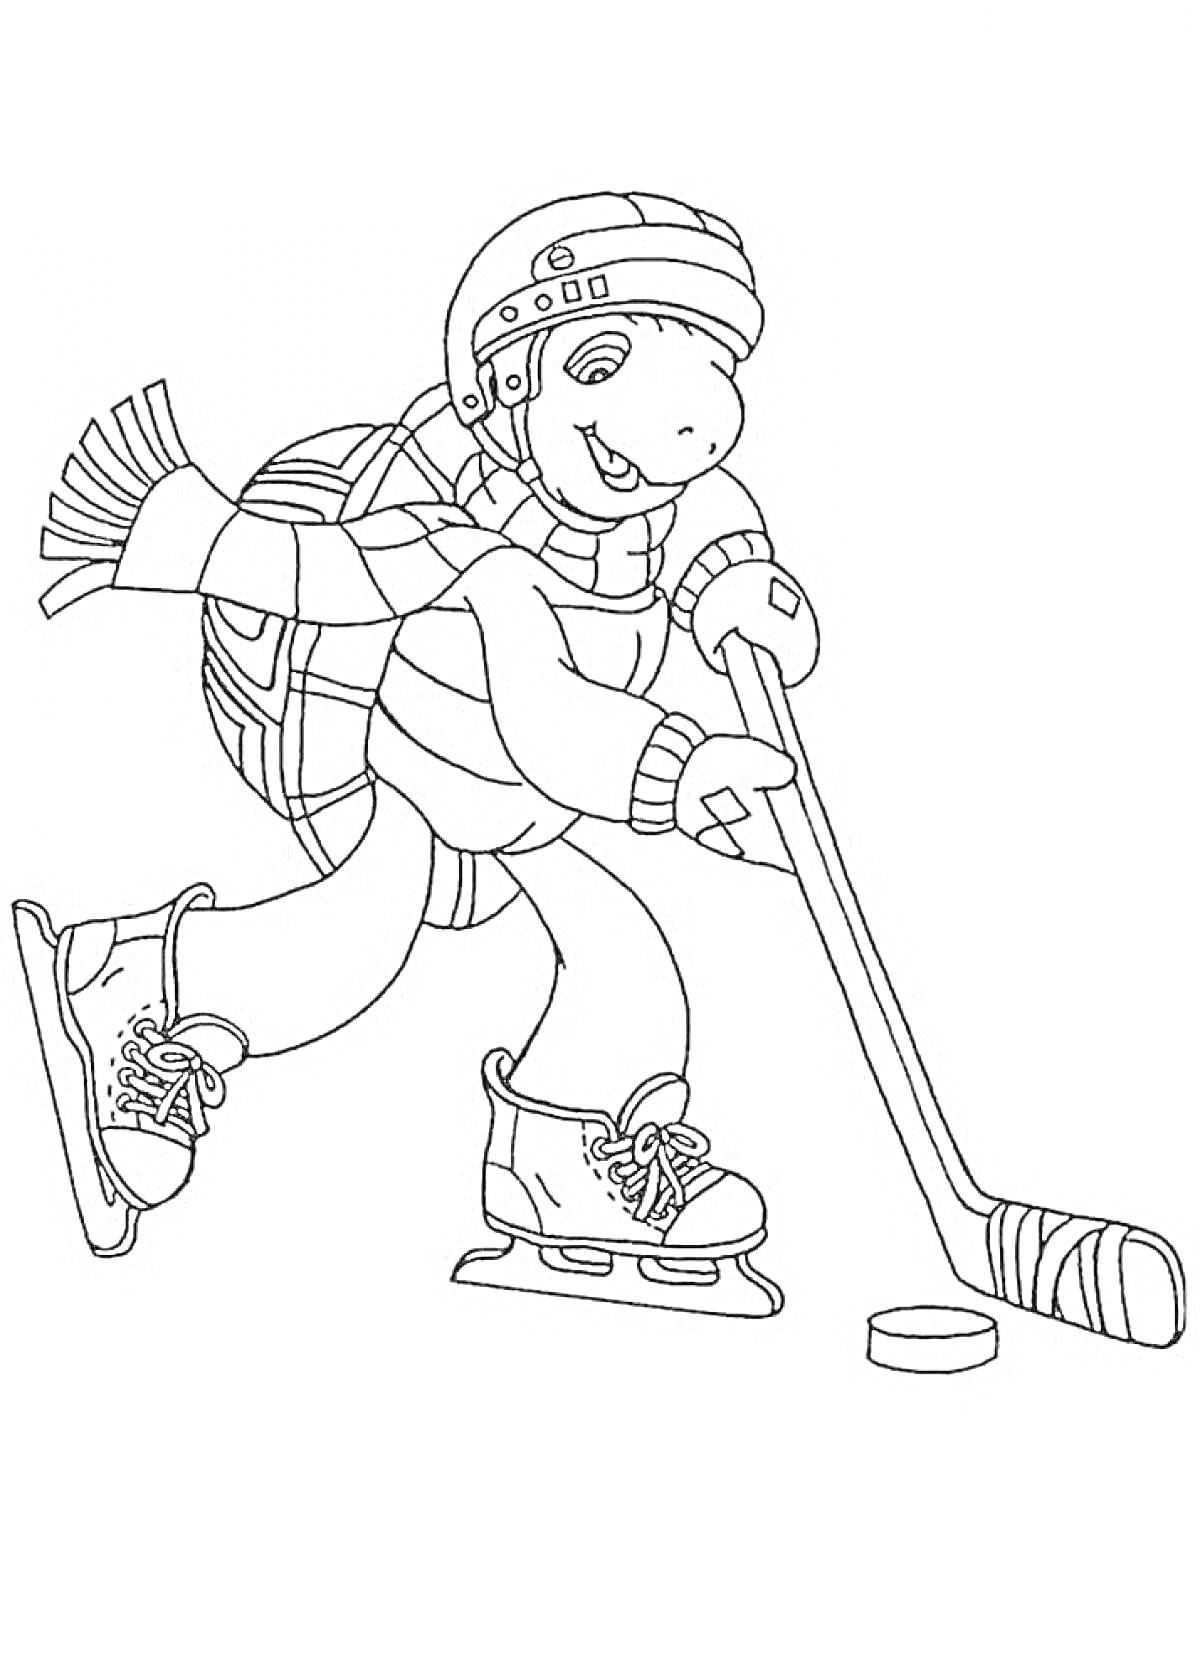 Черепаха в хоккейной экипировке играет в хоккей, держа клюшку, шайба, шапка, шарф, коньки